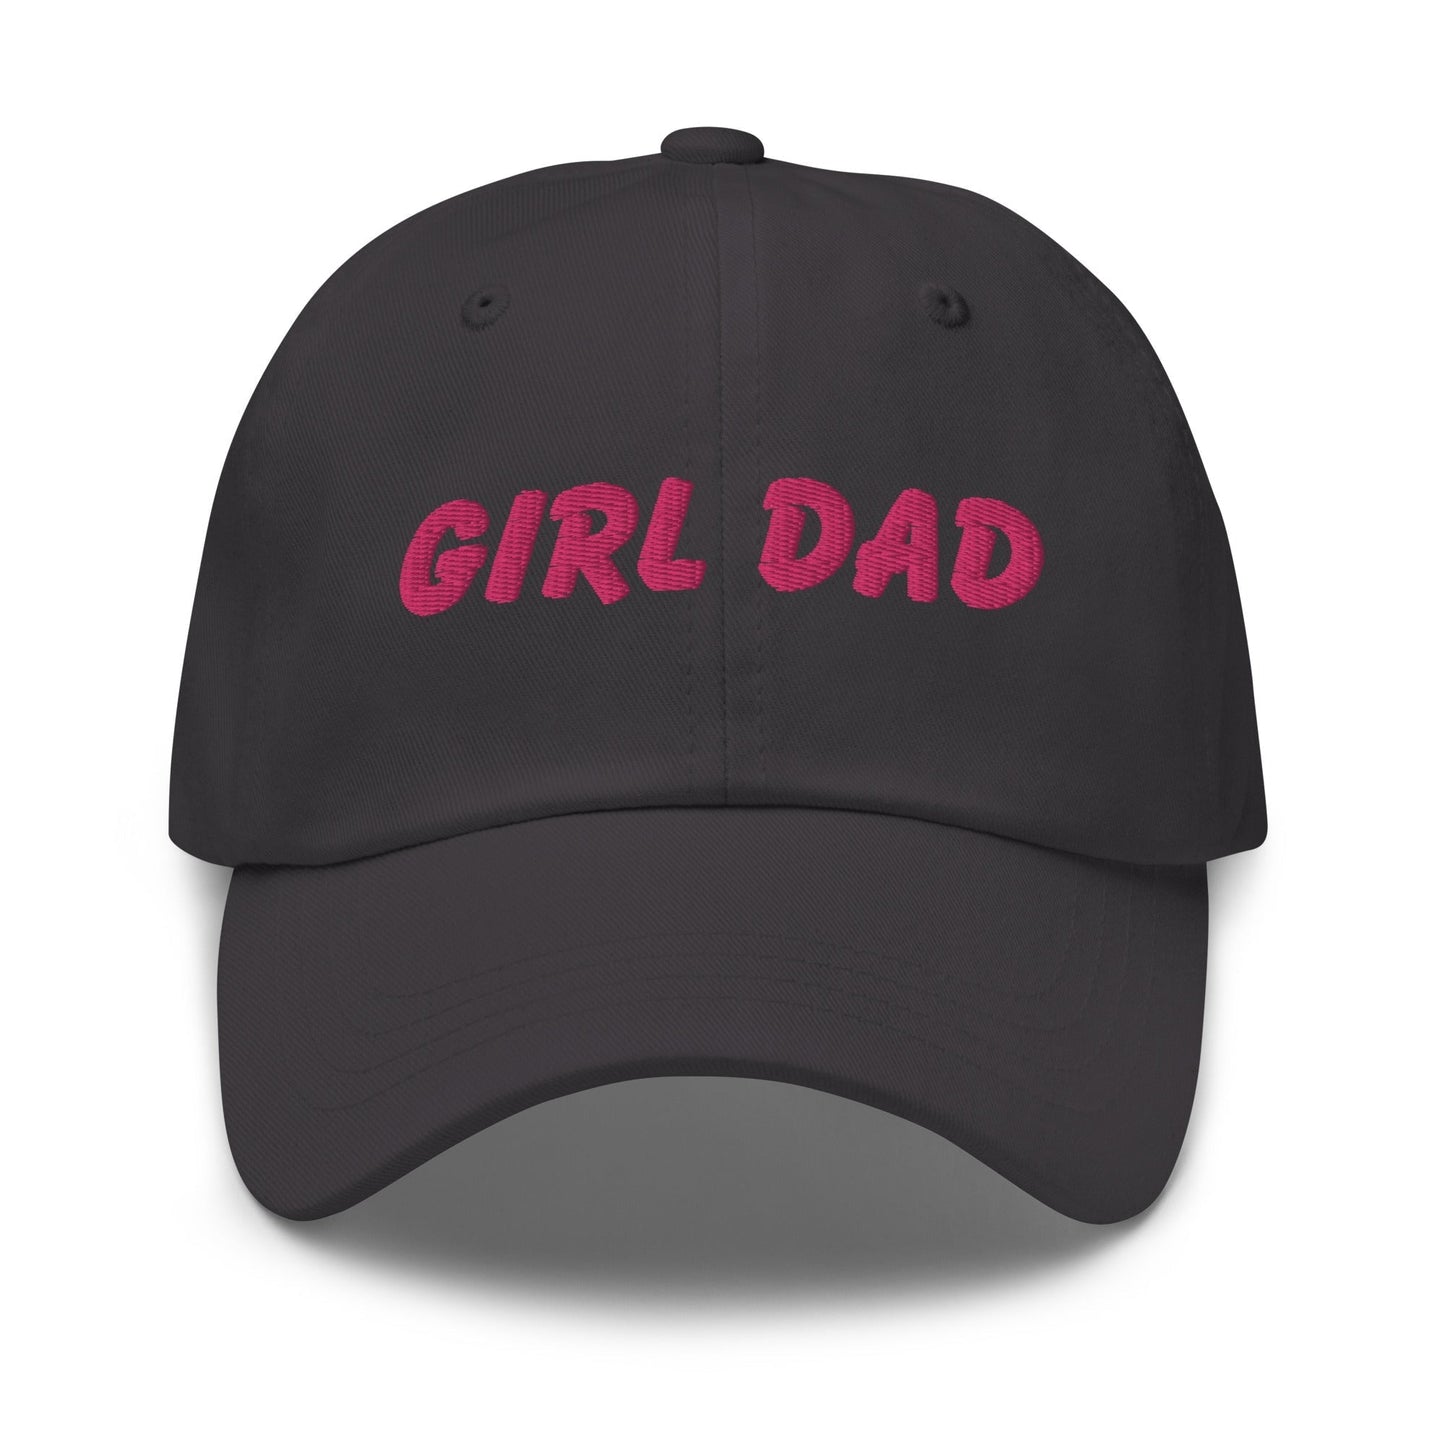 Girl Dad | Dad hat